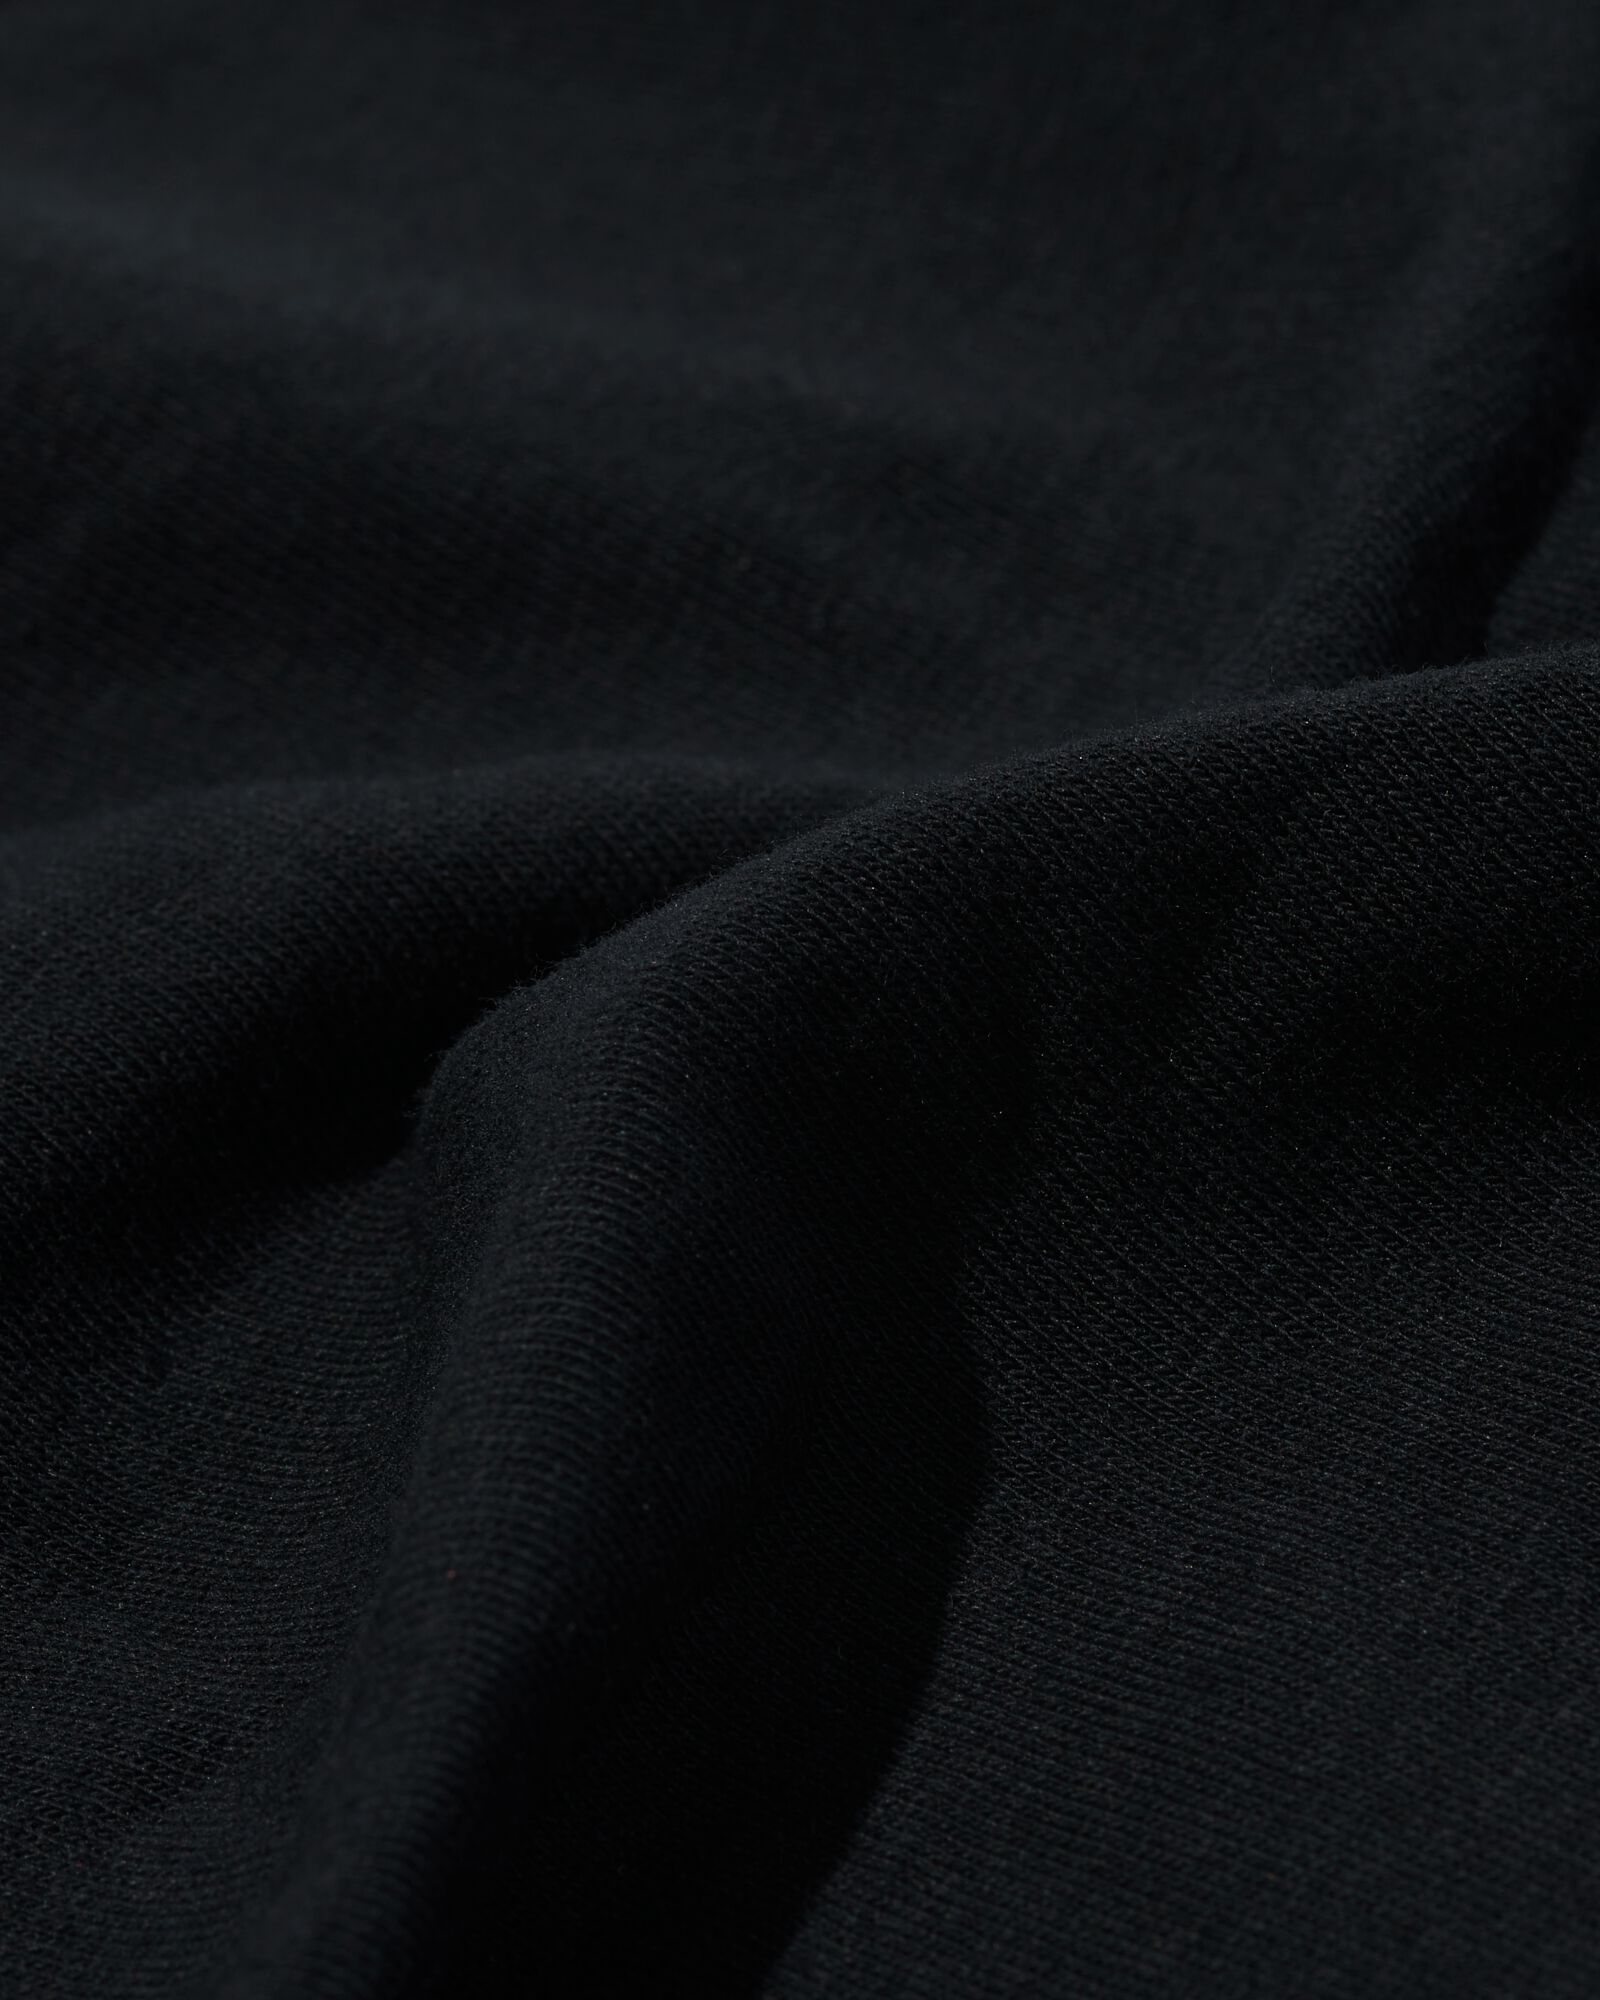 2 shorties femme coton stretch noir noir - 1000030352 - HEMA